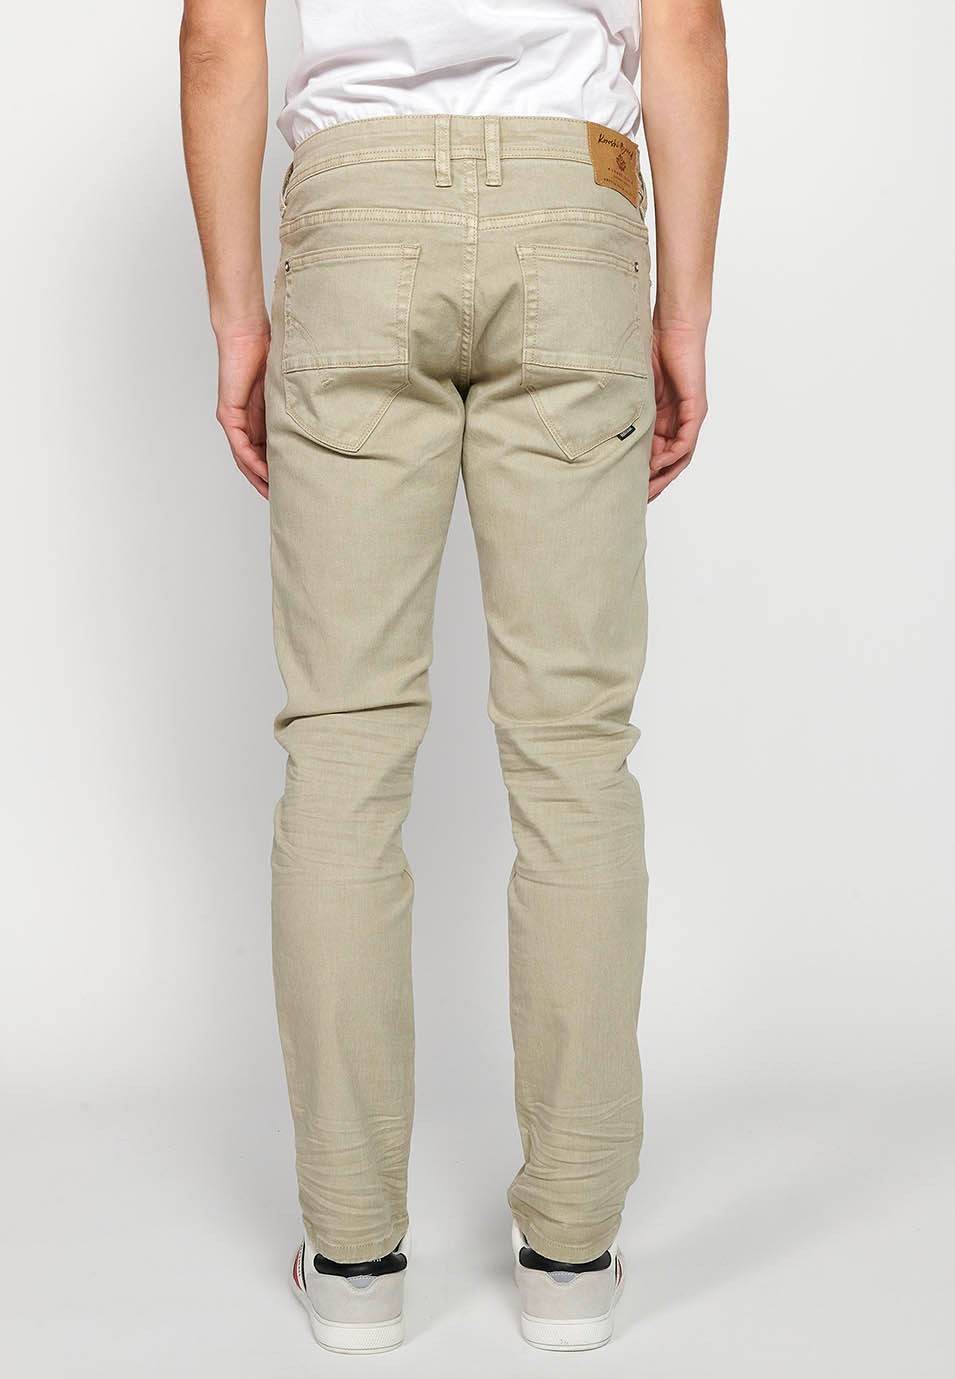 Pantalons llargs straigth regular fit amb Tancament davanter amb cremallera i botó amb Cinc butxaques, un cerillero de Color Pedra per a Home 3